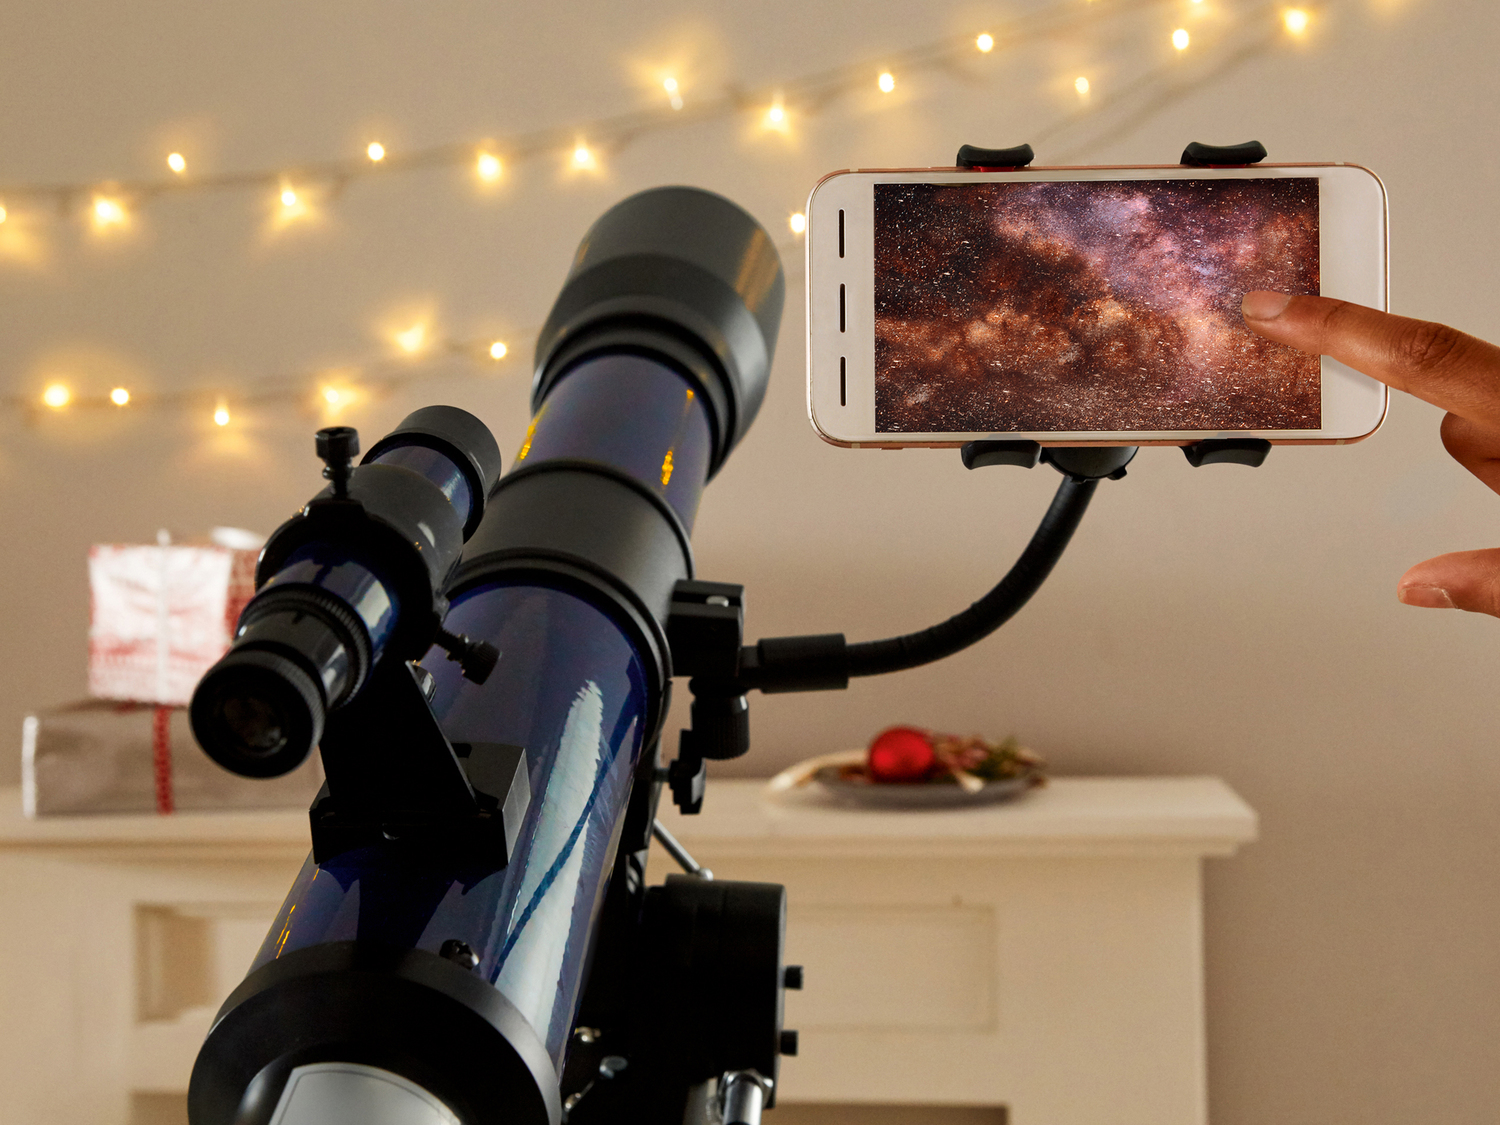 Telescopio rifrattore Skylux con App Bresser, prezzo 89.00 € 
- 2 oculari di ...